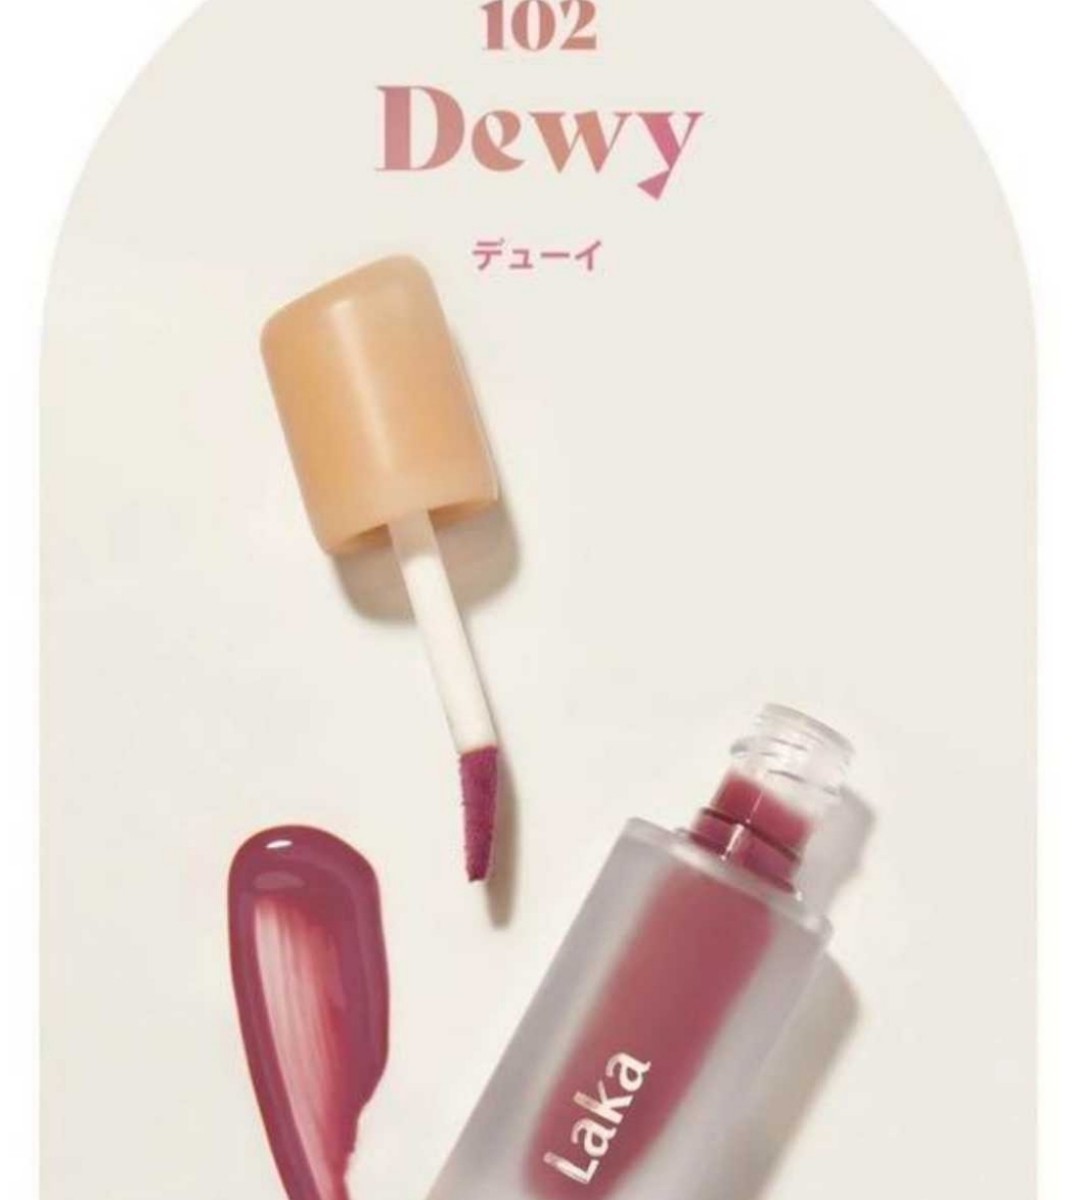 【新品】LAKA フルーティーグラムティント ラカ リップ 102 Dewy デューイ化粧品 コスメ コスメ 化粧品